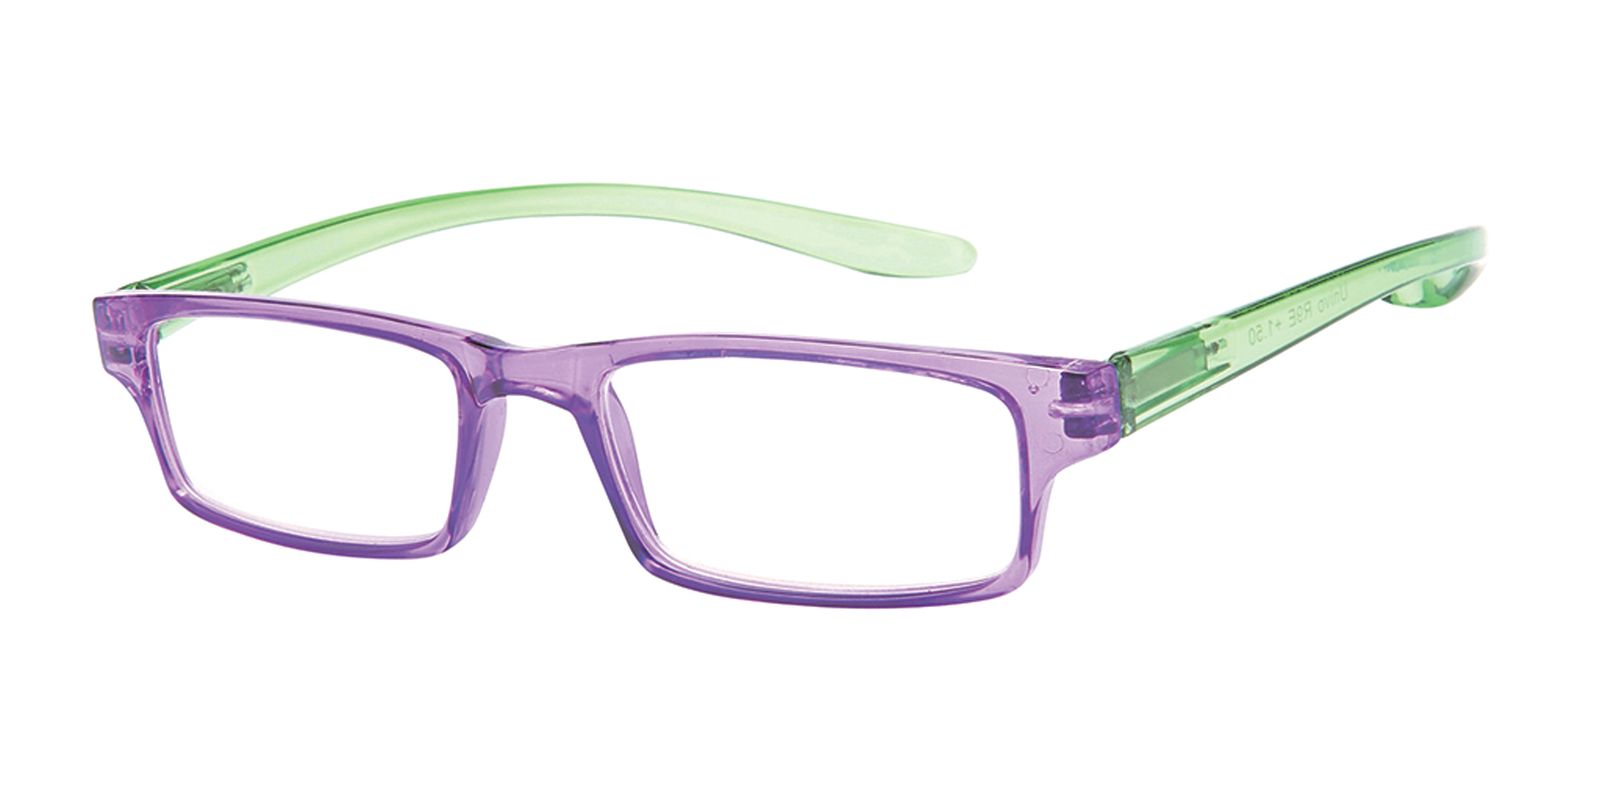 Reading Glasses R9 - E: Purple / Green